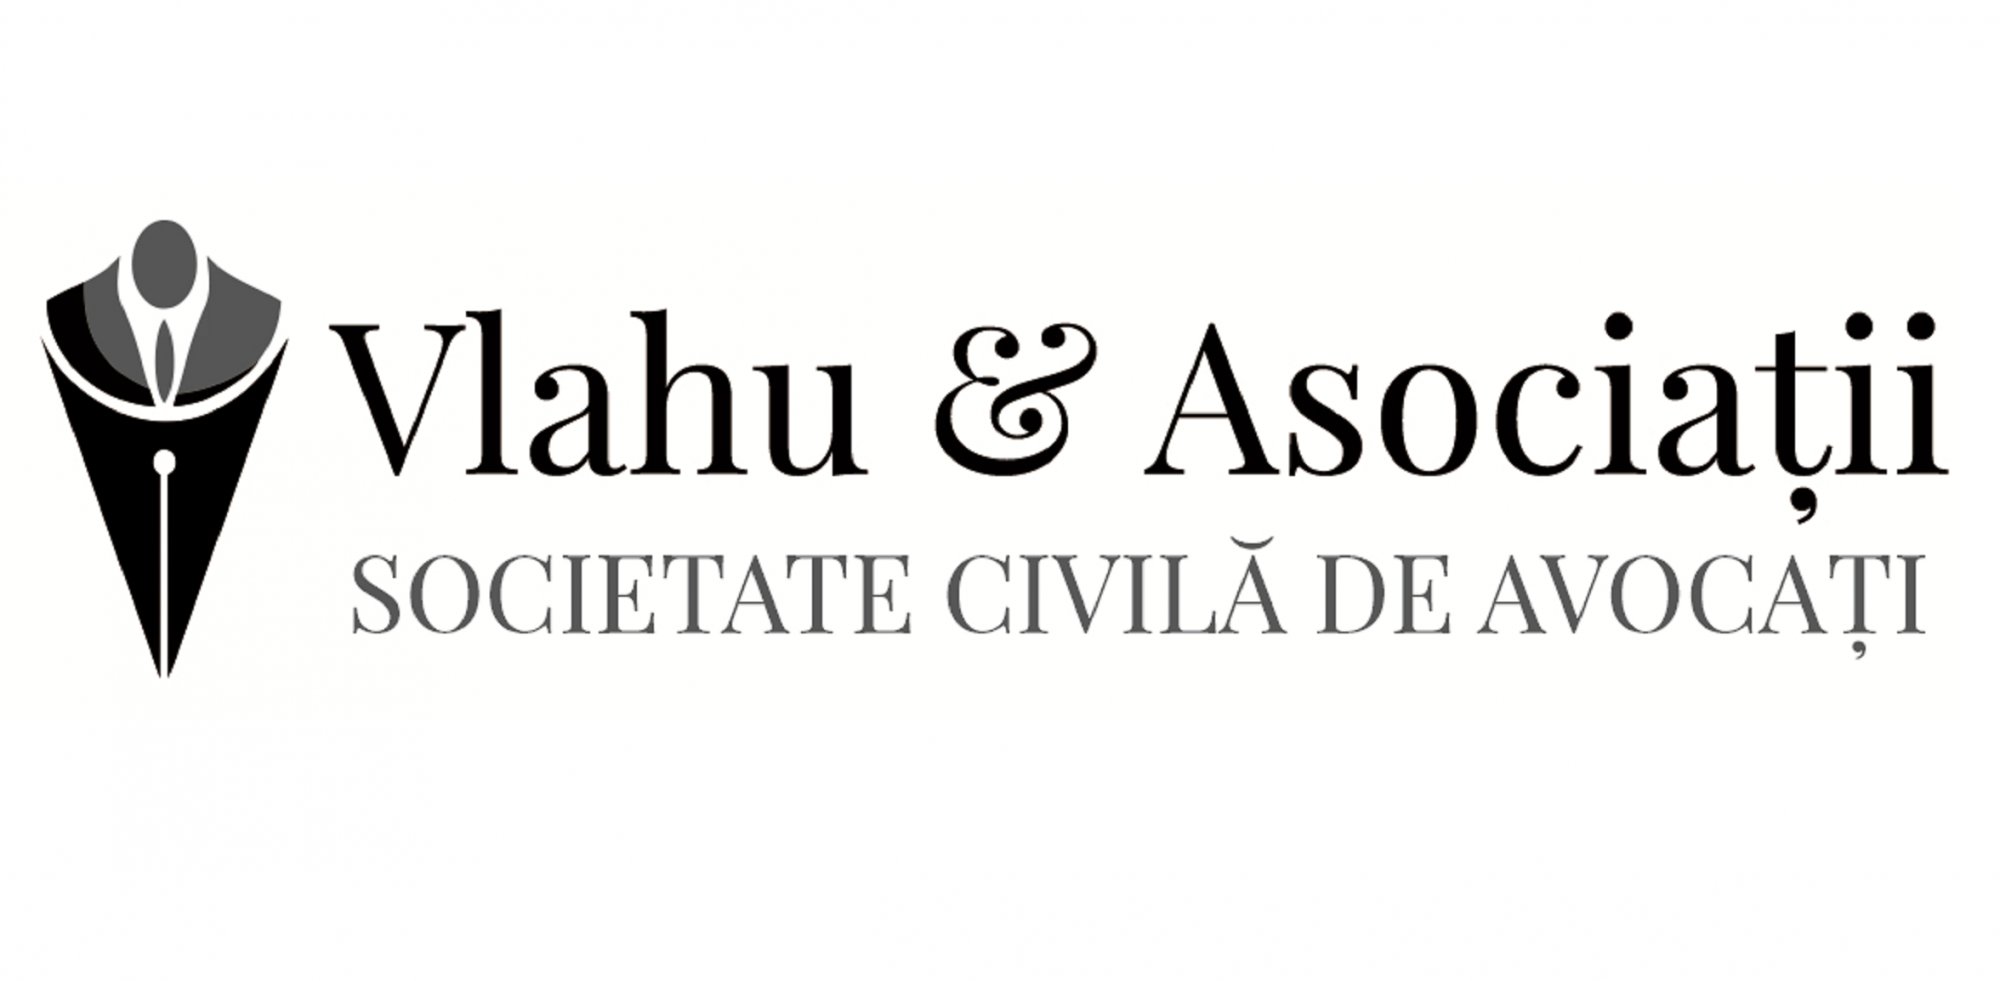 Vlahu & Asociatii - S.C.A. cover photo